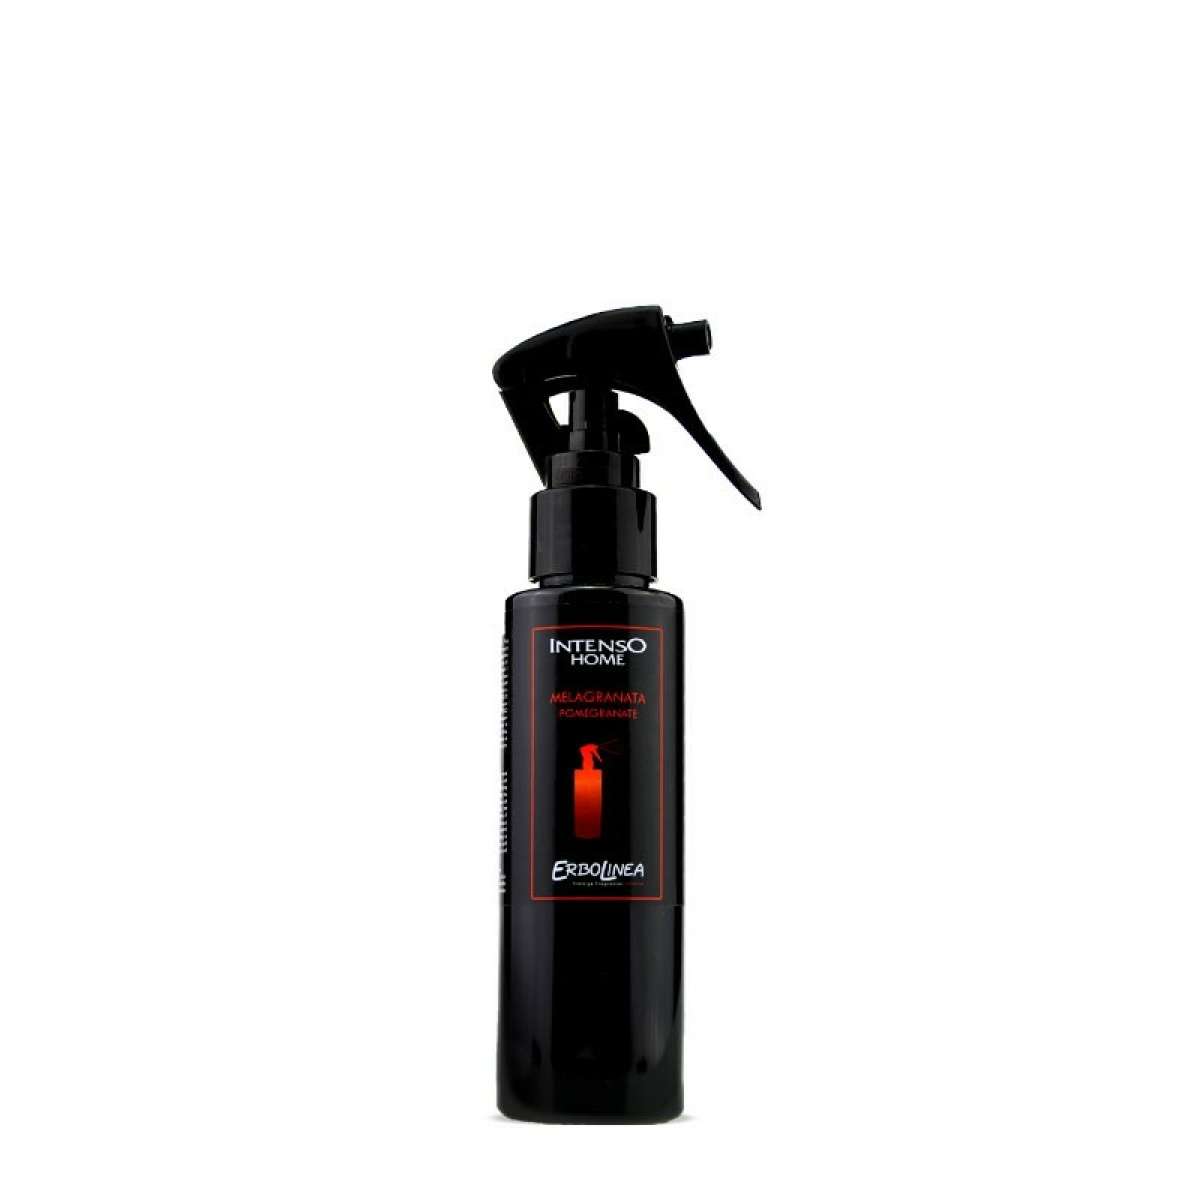 Immagine del prodotto Home Spray per Ambiente Melagranata 100 ml | Erbolinea Prestige